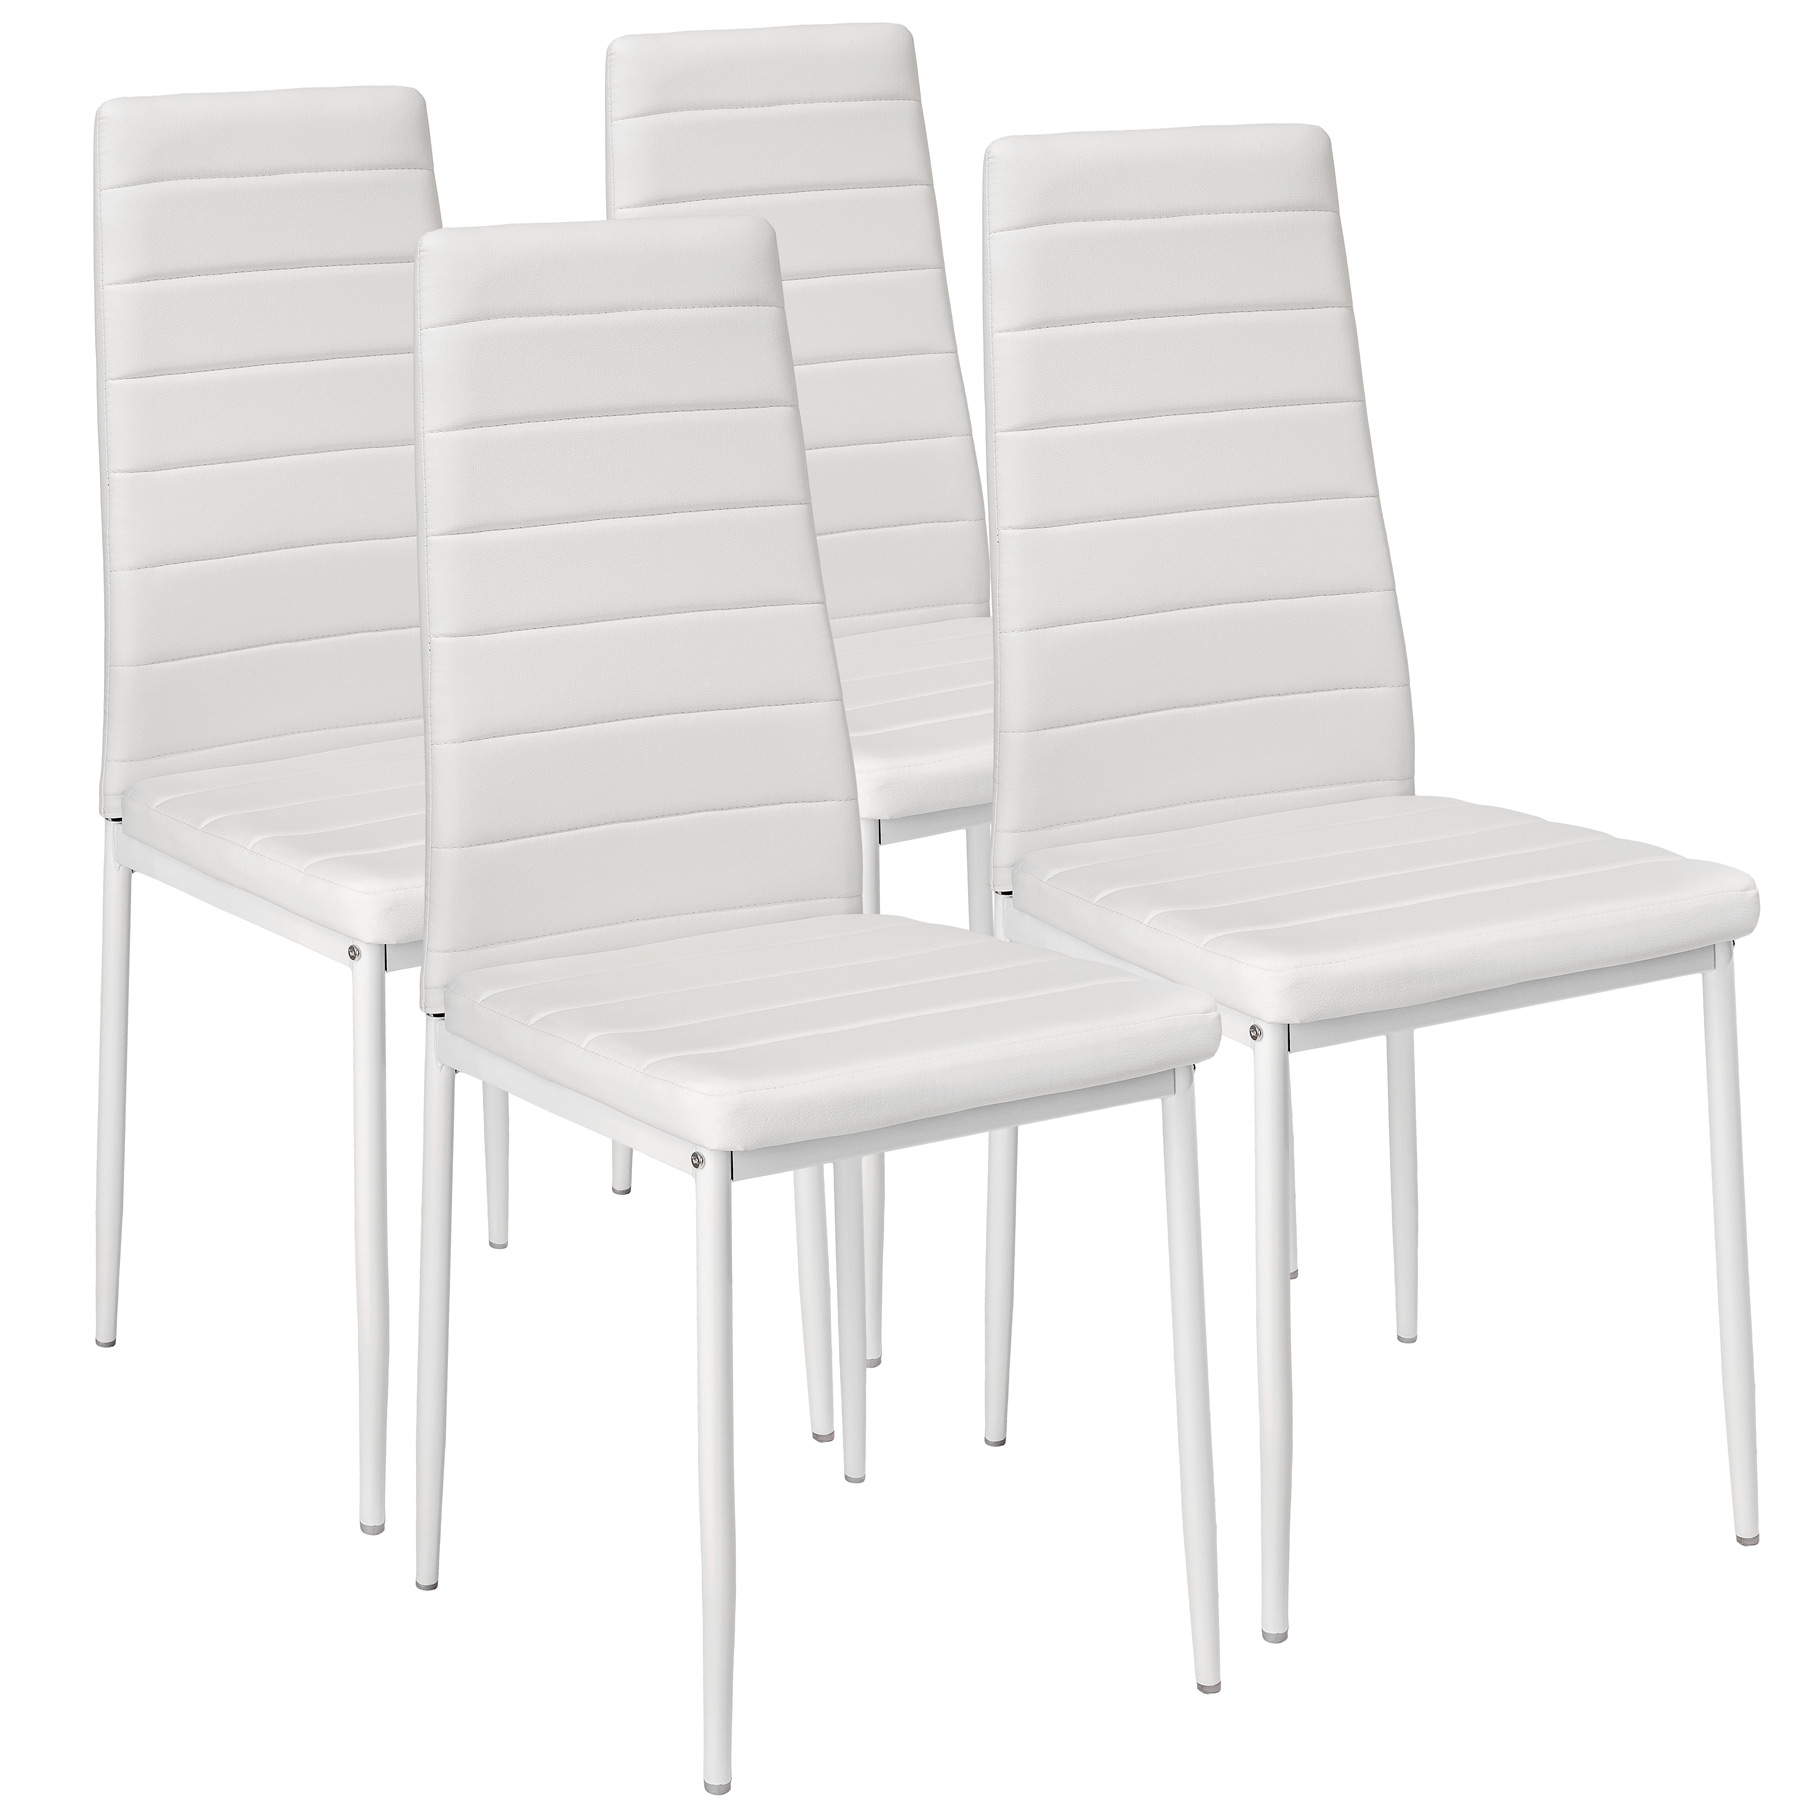 Стулья кухонные обеденные. Комплект стульев 4 шт. Stool Group y801-v, белый. Ikea стул кухонный. Стул из экокожи вс-017 2 шт белый. Икеа стулья кухонные мягкие.